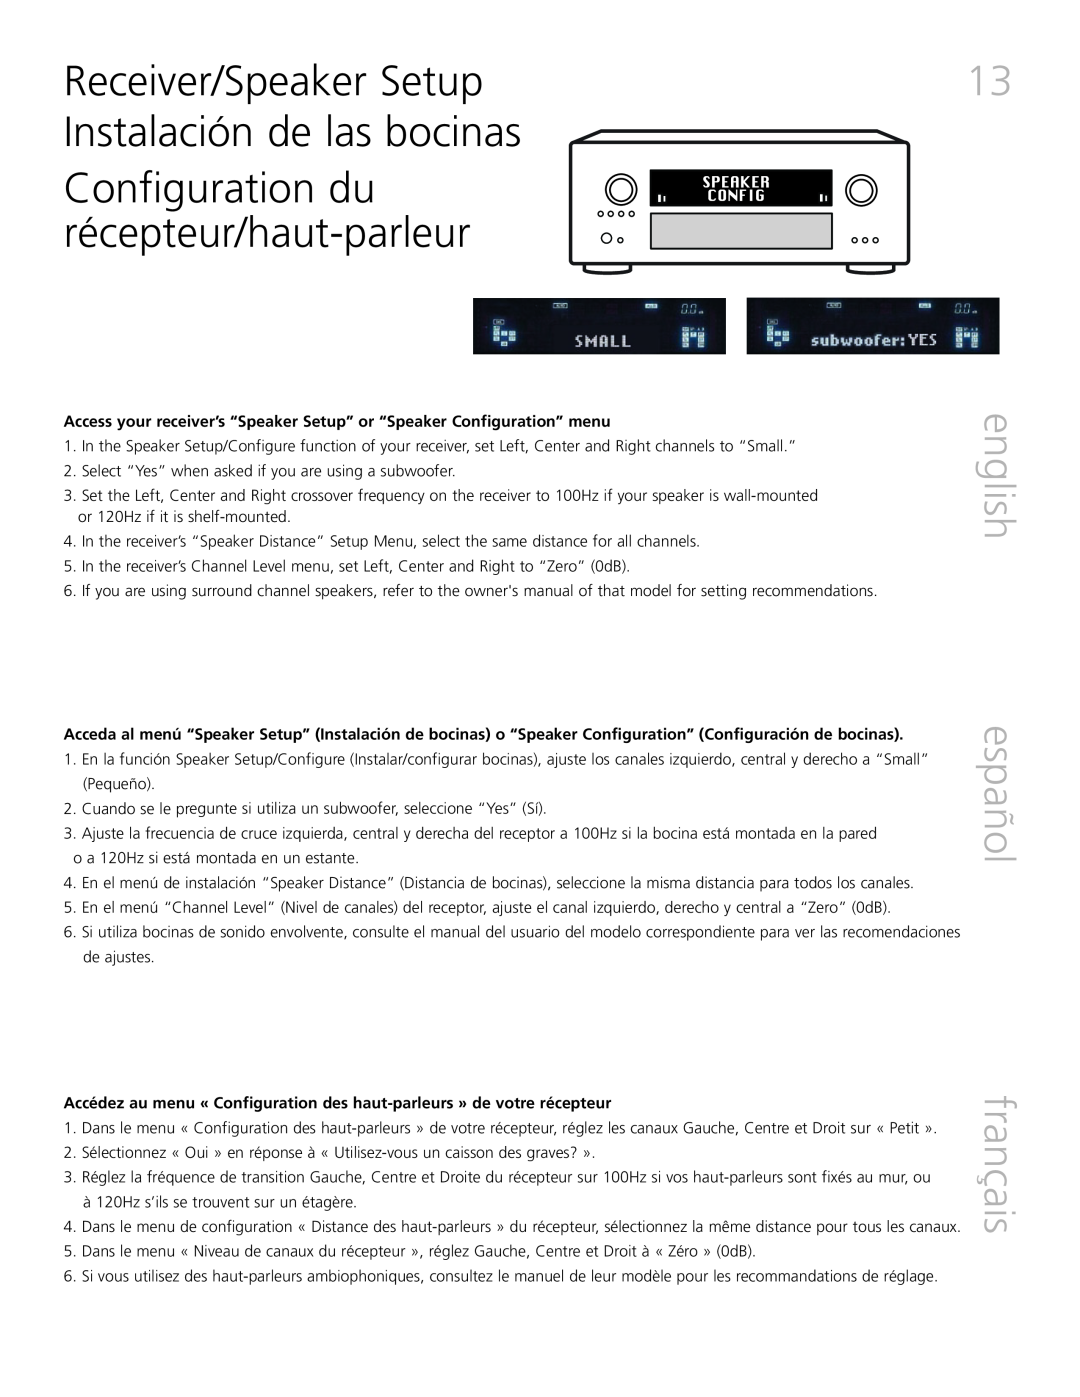 Definitive Technology XTR-SSA3 owner manual Configuration du récepteur/haut-parleur, english español français 